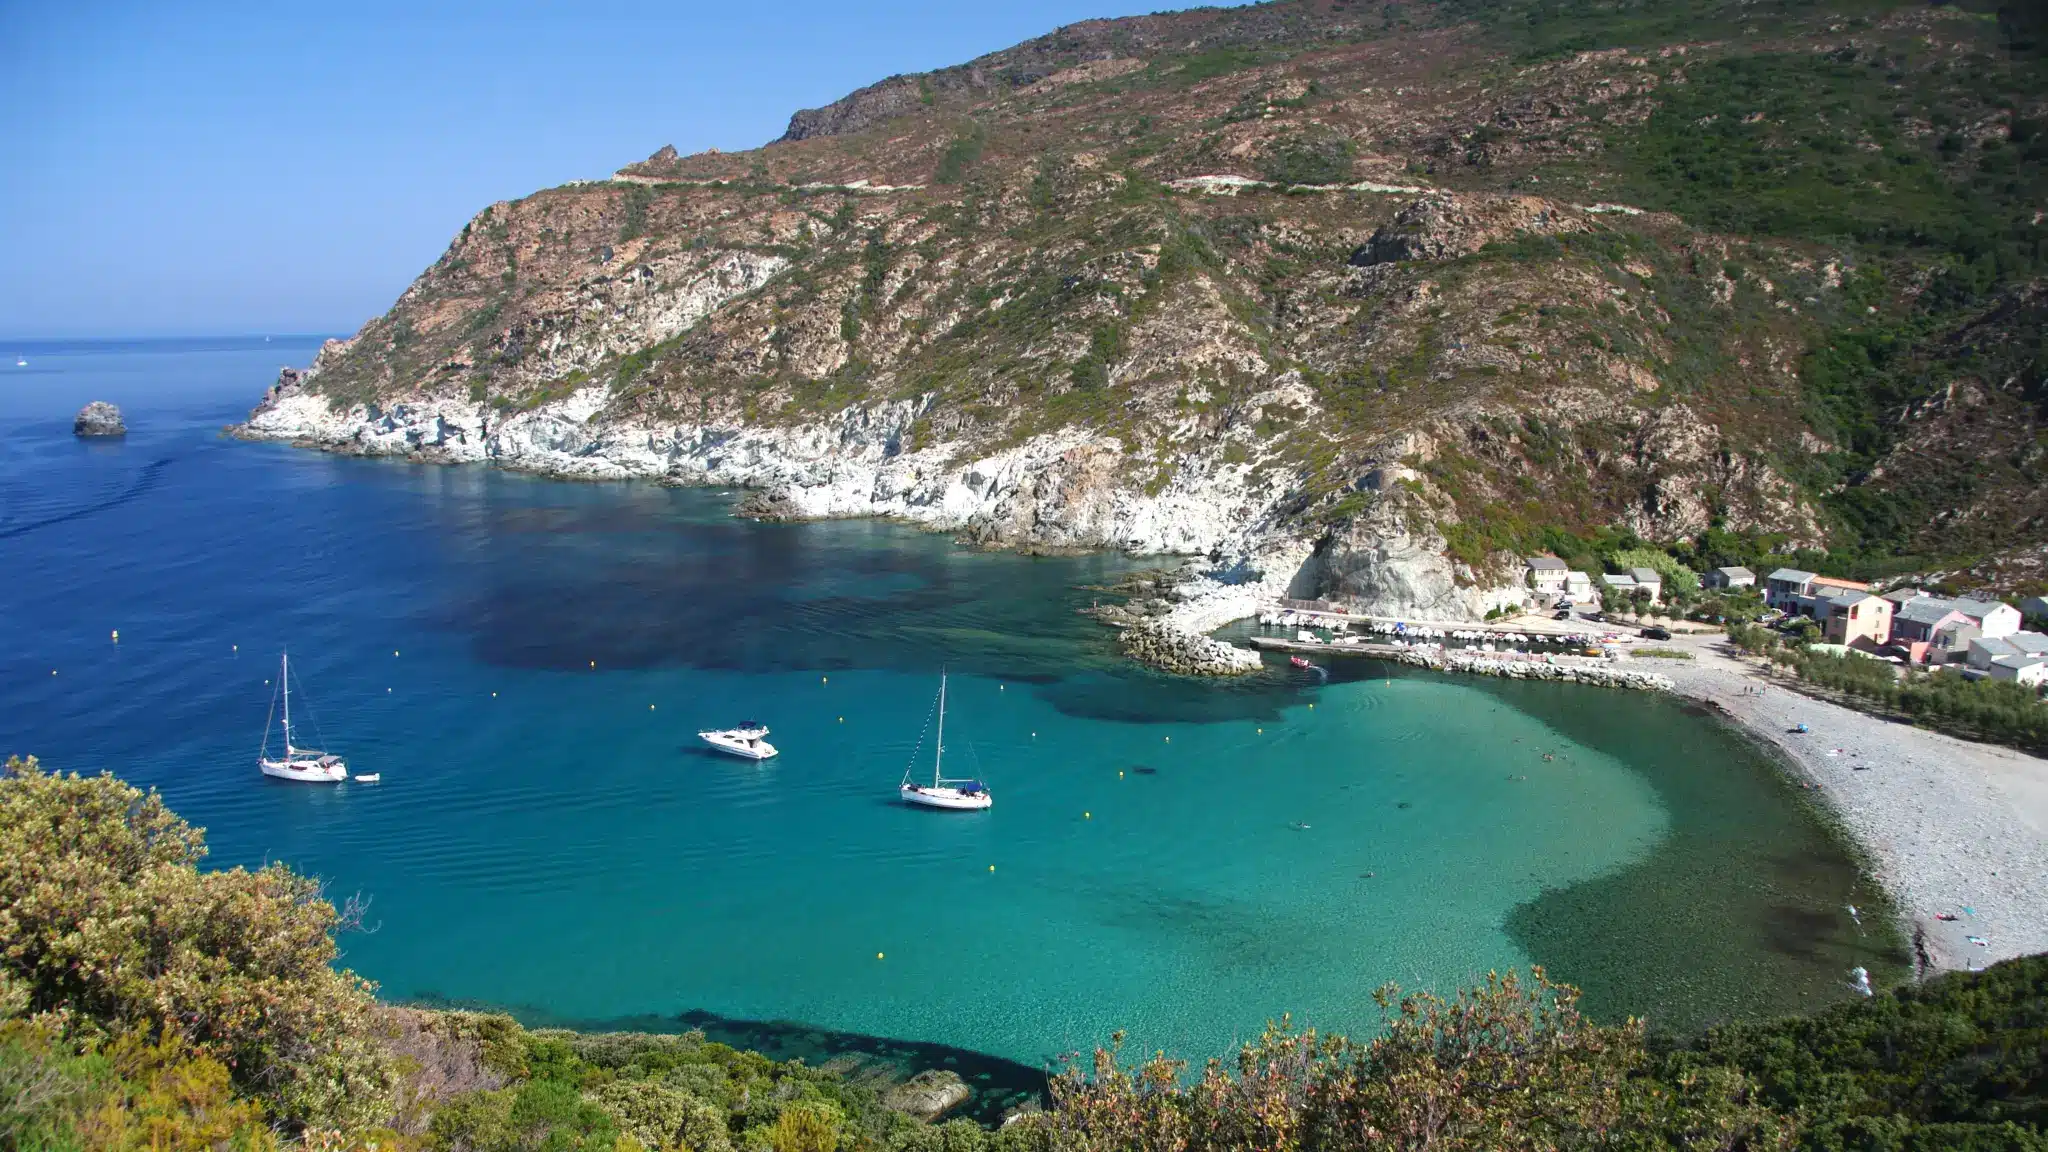 Découvrez - Camping à proximité de la mer en Corse